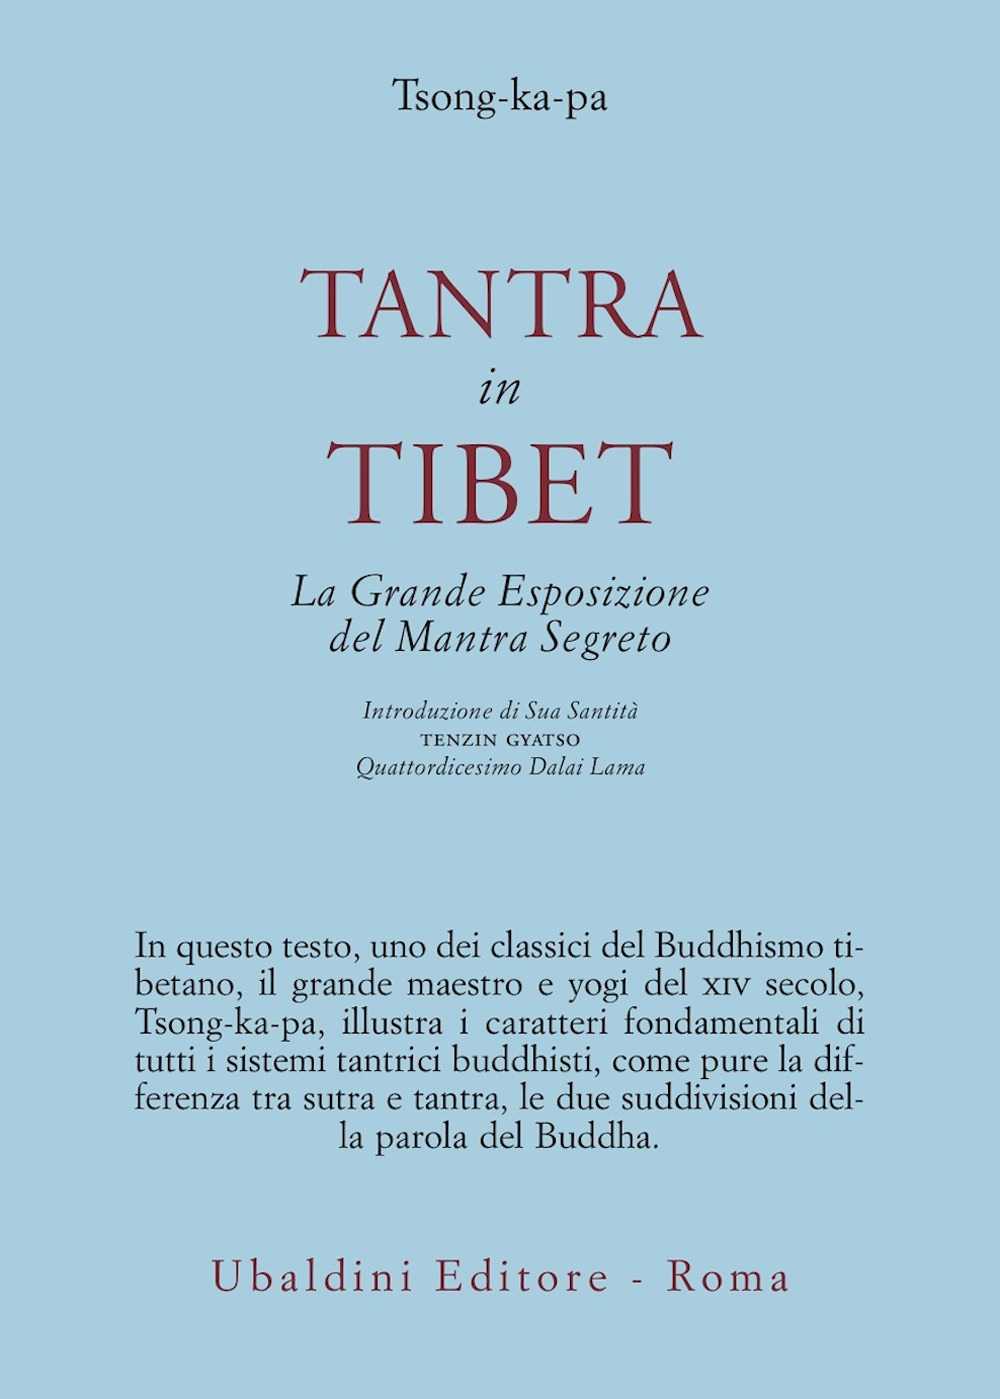 Tantra in Tibet. La grande esposizione del Mantra segreto (parte prima). Vol. 1: Tantra in Tibet